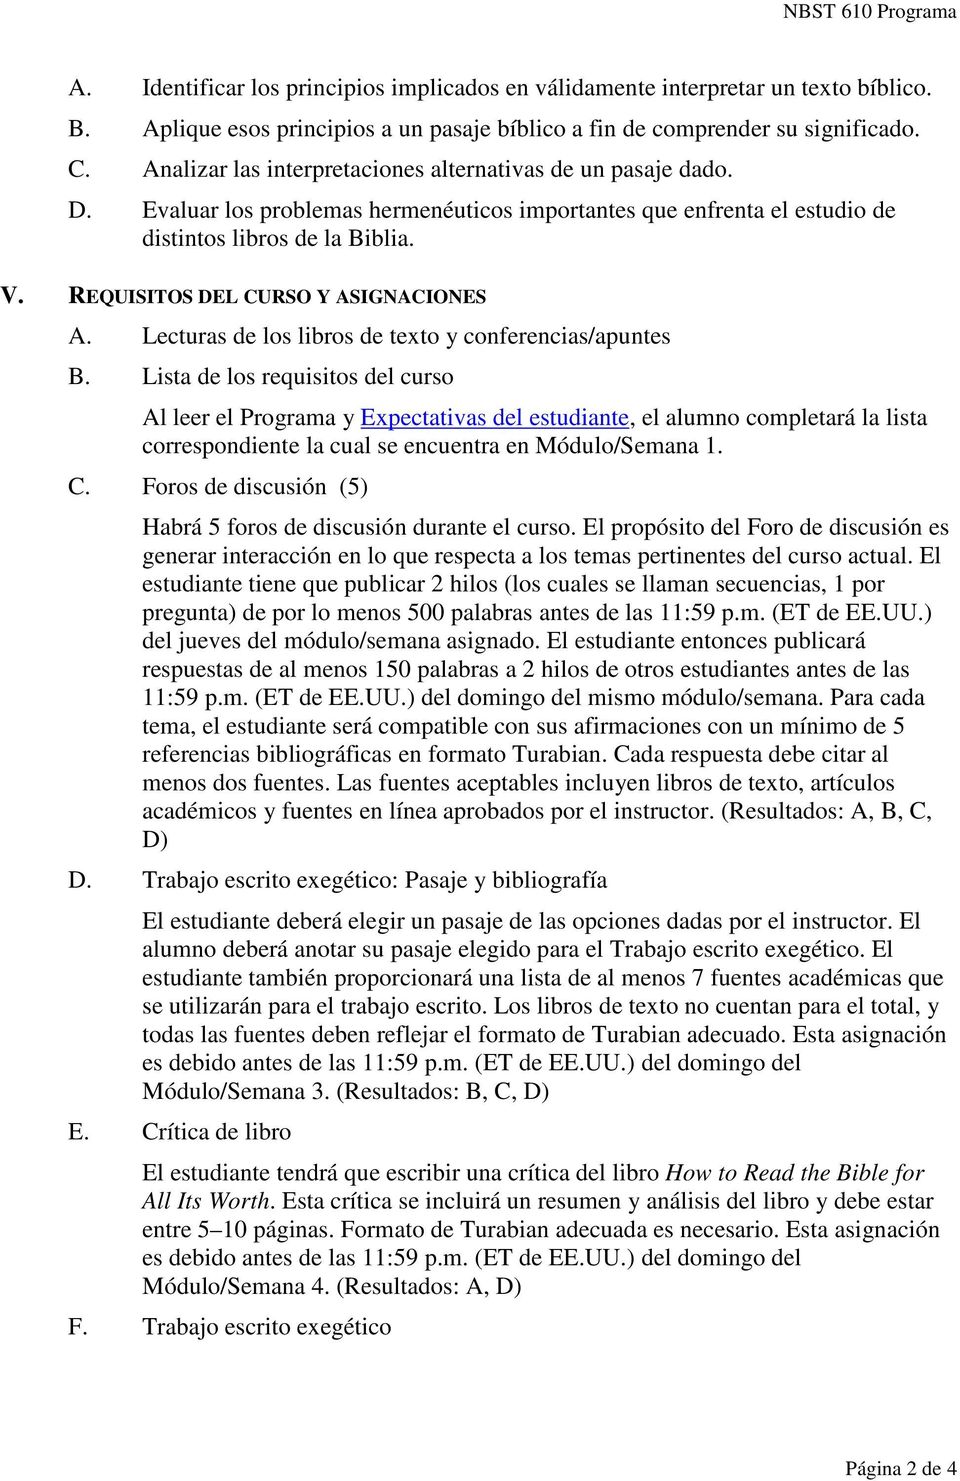 REQUISITOS DEL CURSO Y ASIGNACIONES A. Lecturas de los libros de texto y conferencias/apuntes B.